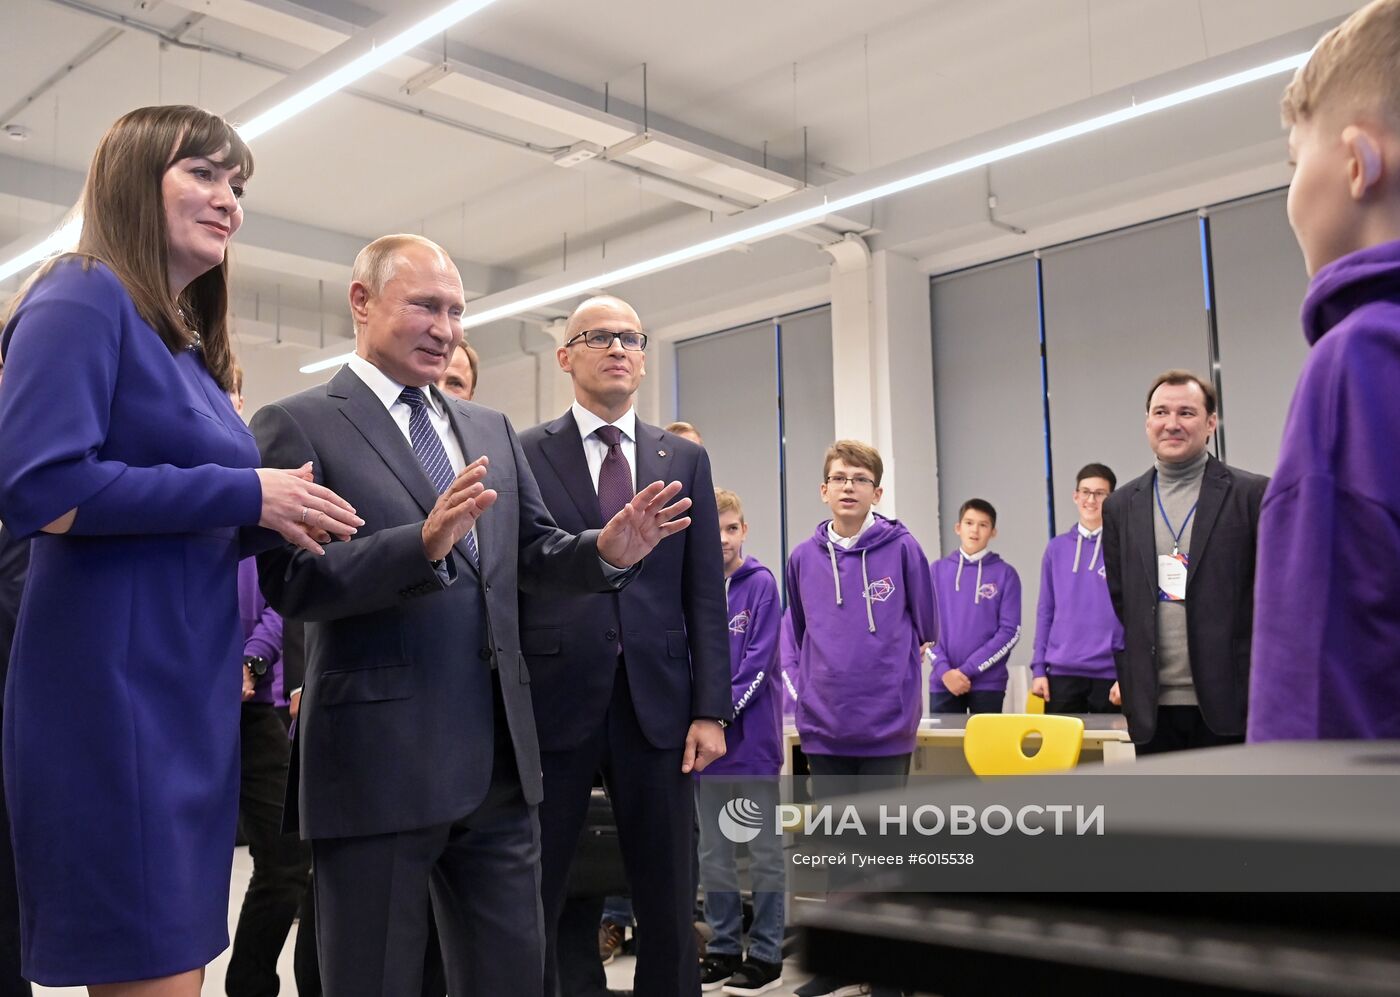 Рабочая поездка президента РФ В. Путина в Удмуртскую Республику